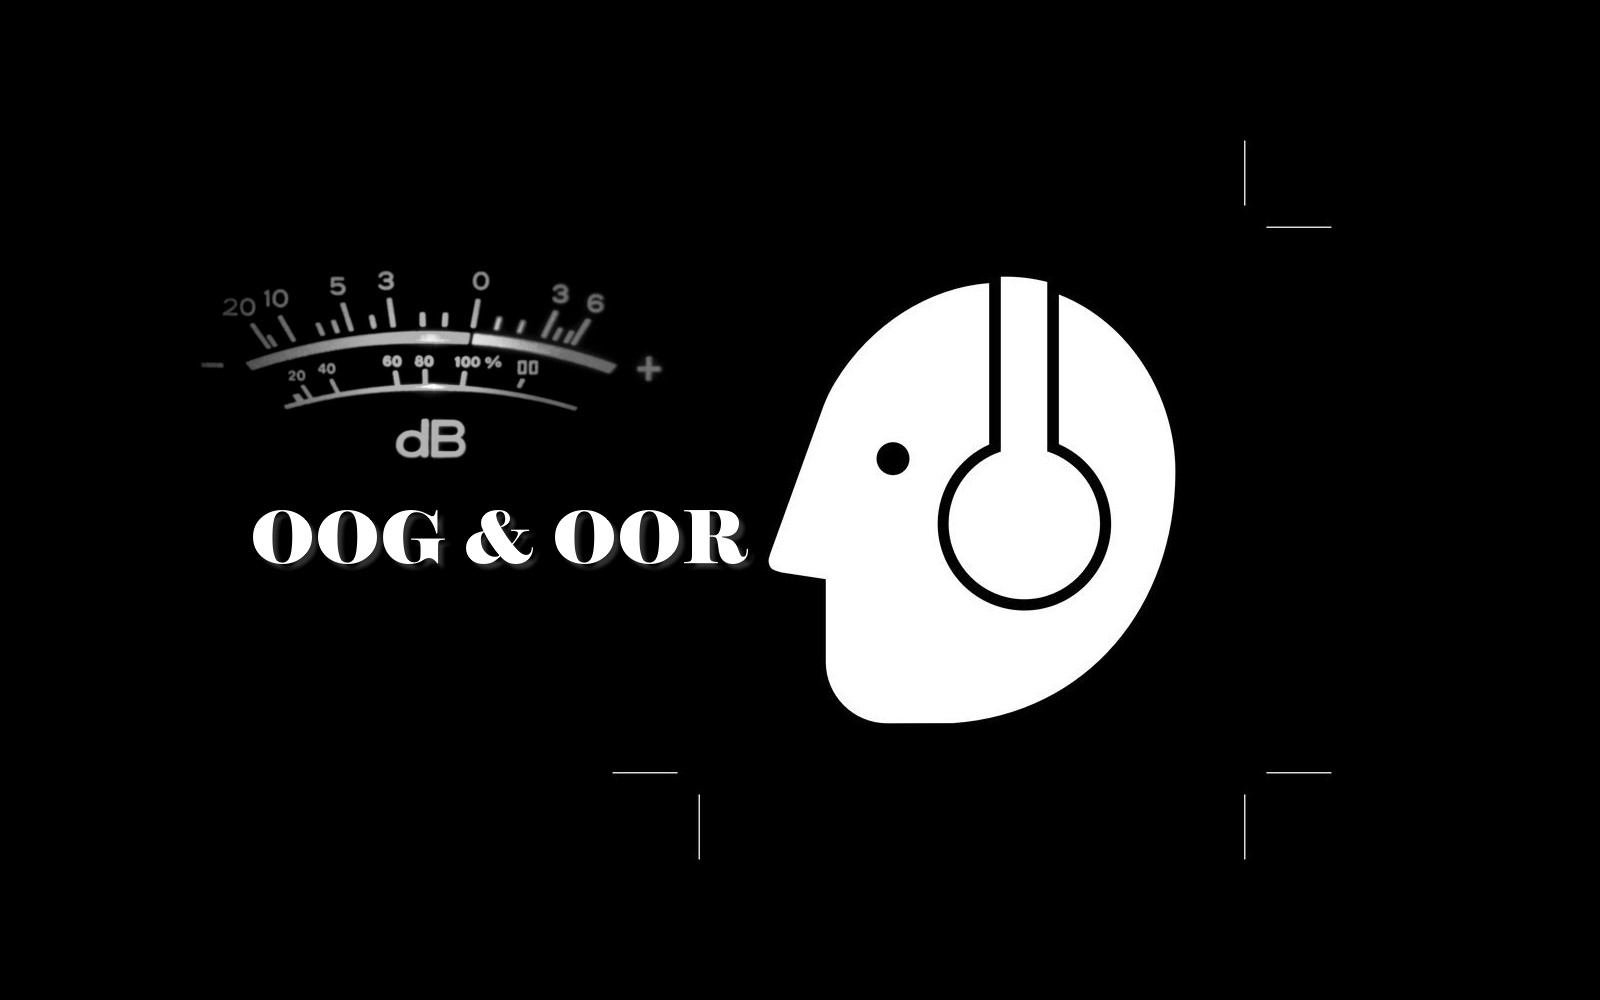 Oog+Oor